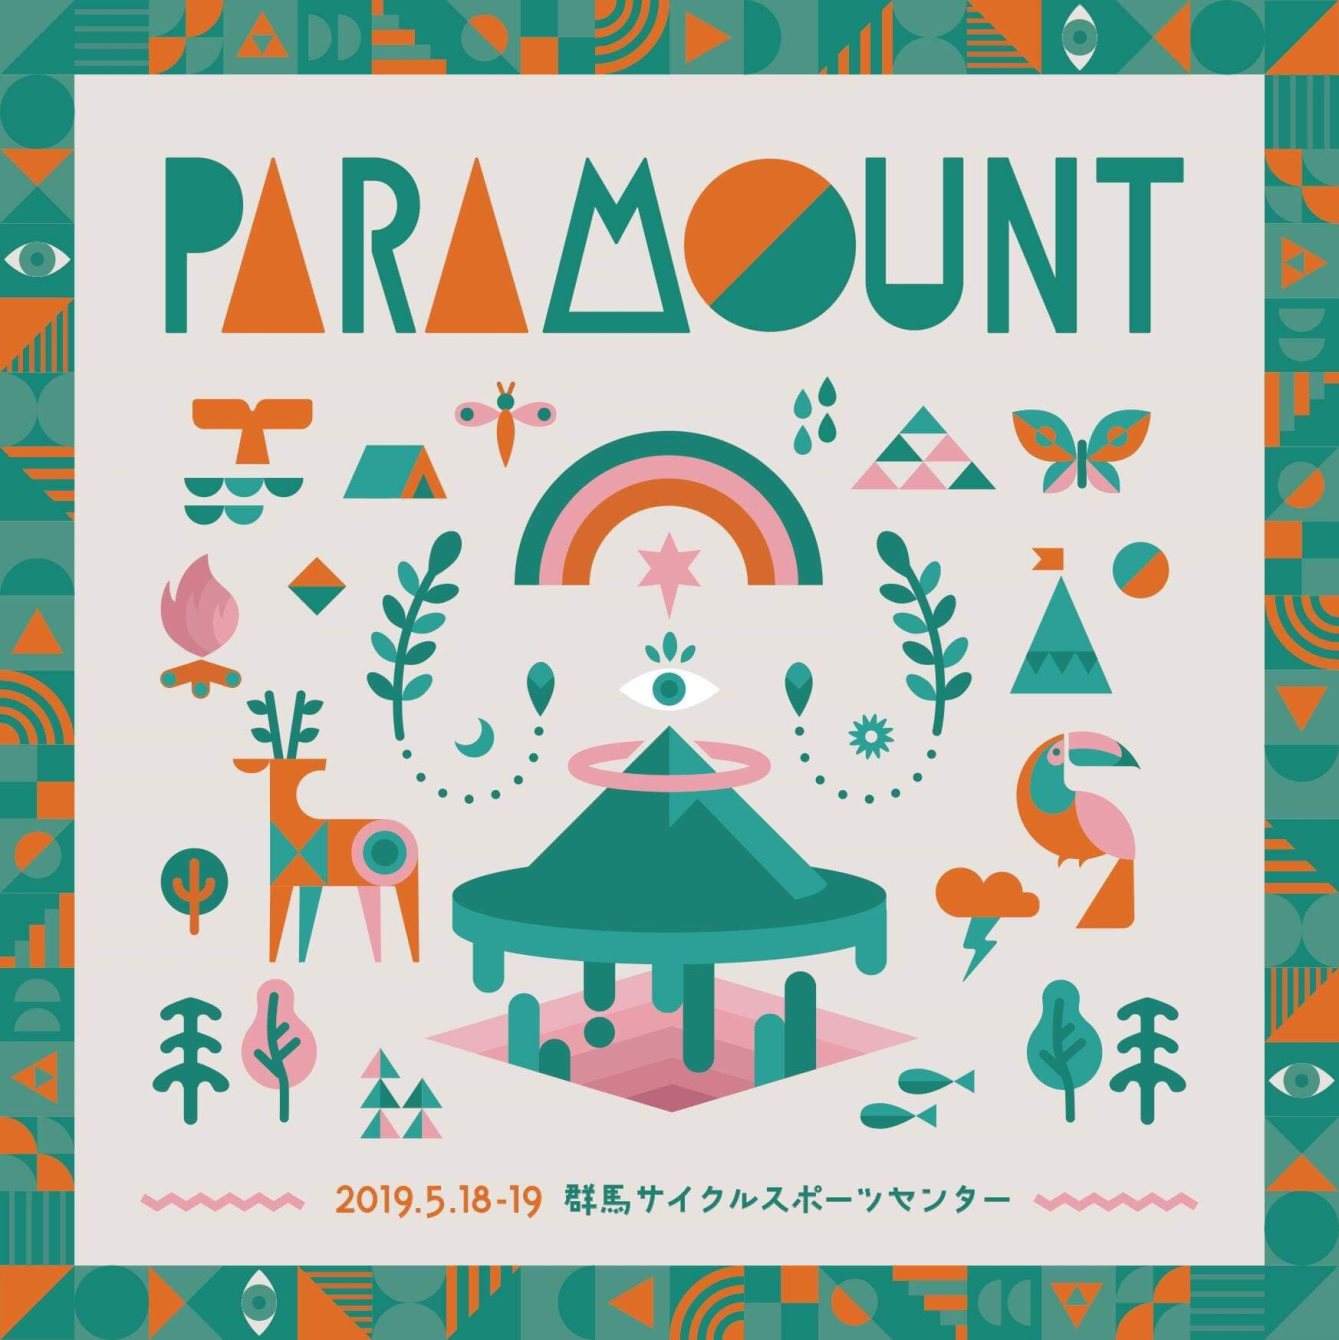 Paramount 2019 - フライヤー表